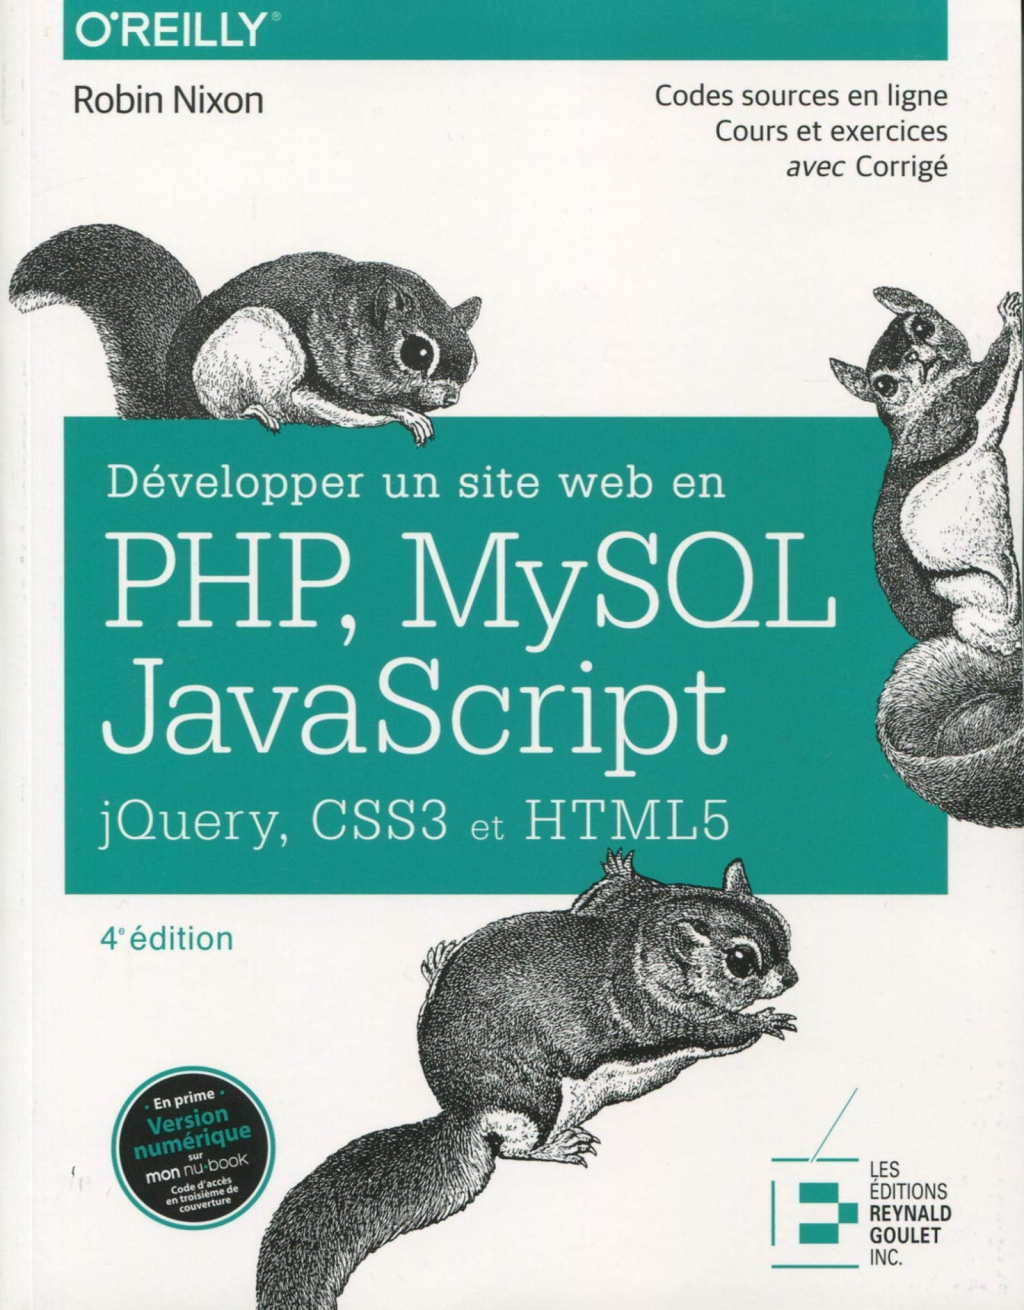 Một số tựa sách về lập trình PHP